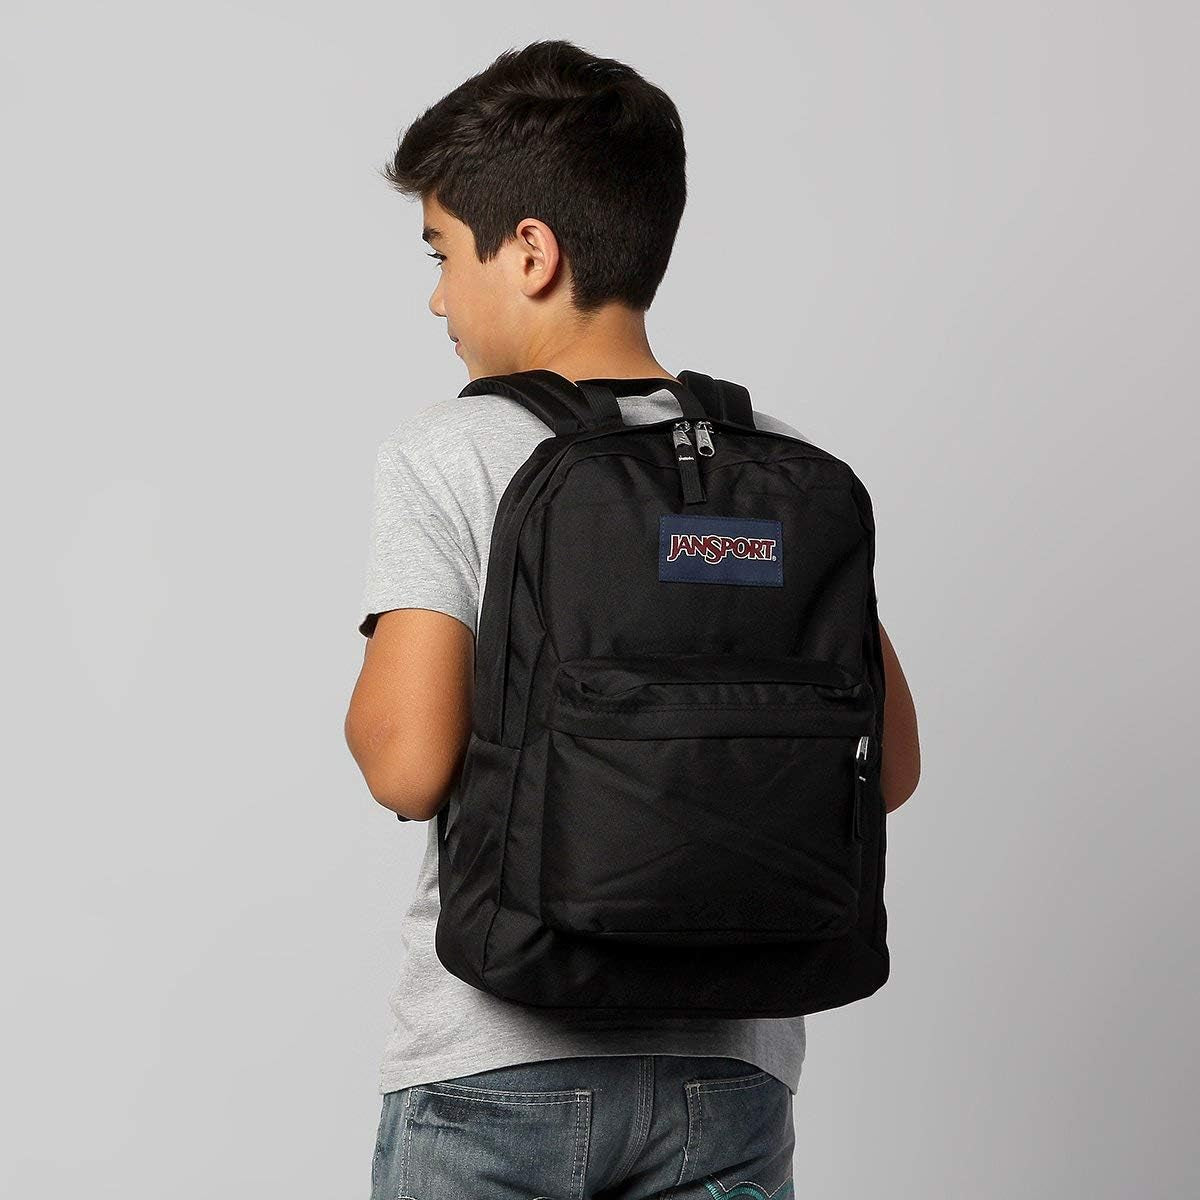 Superbreak One School Backpack, Black